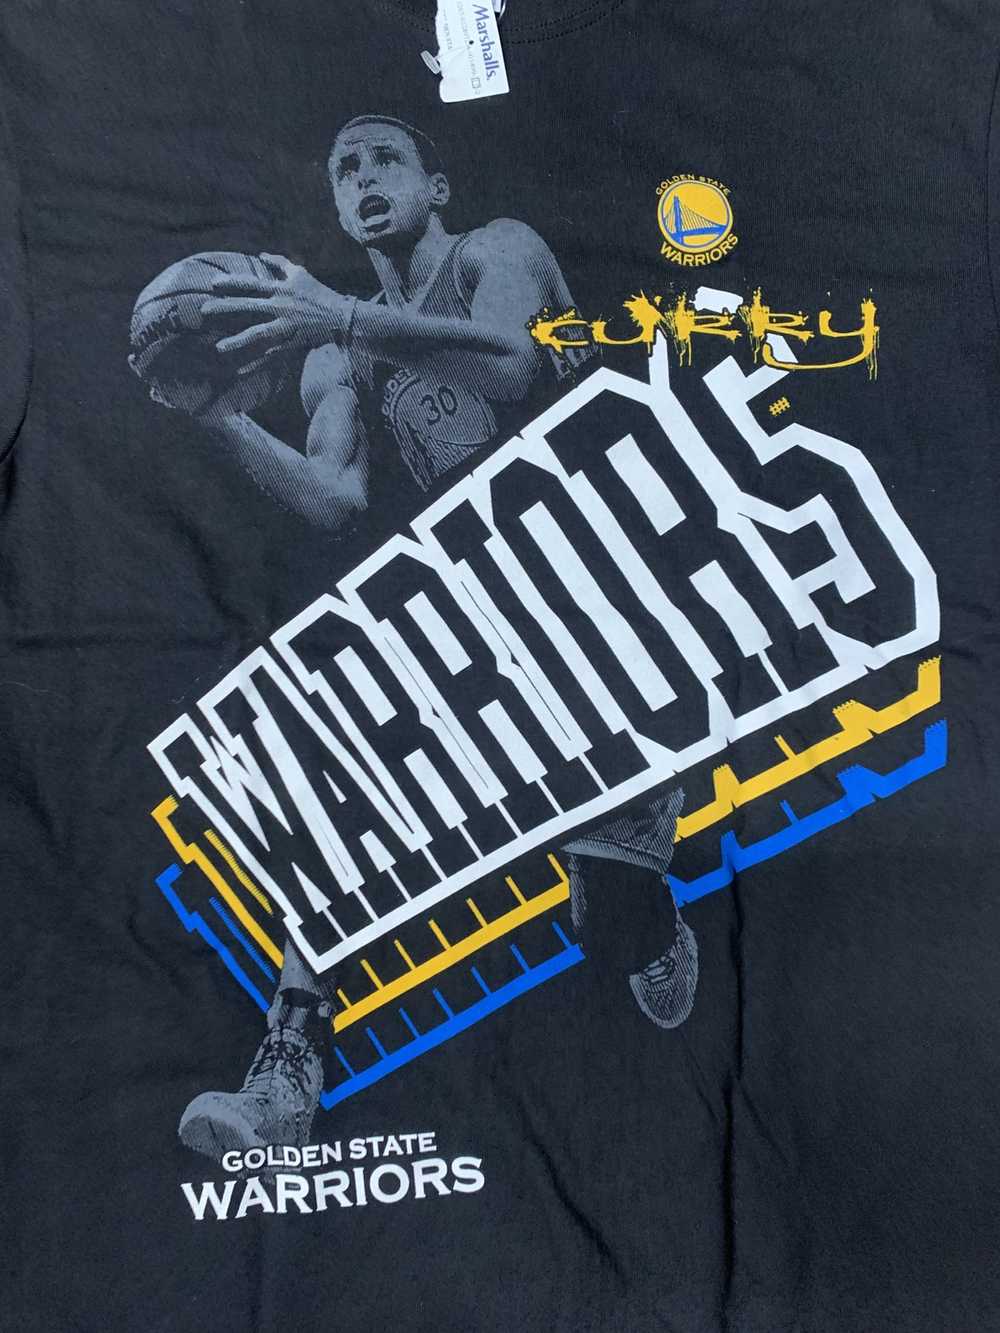 Stephen Curry #30 Golden State Warriors Jersey Size XL UNK NBA Basketball